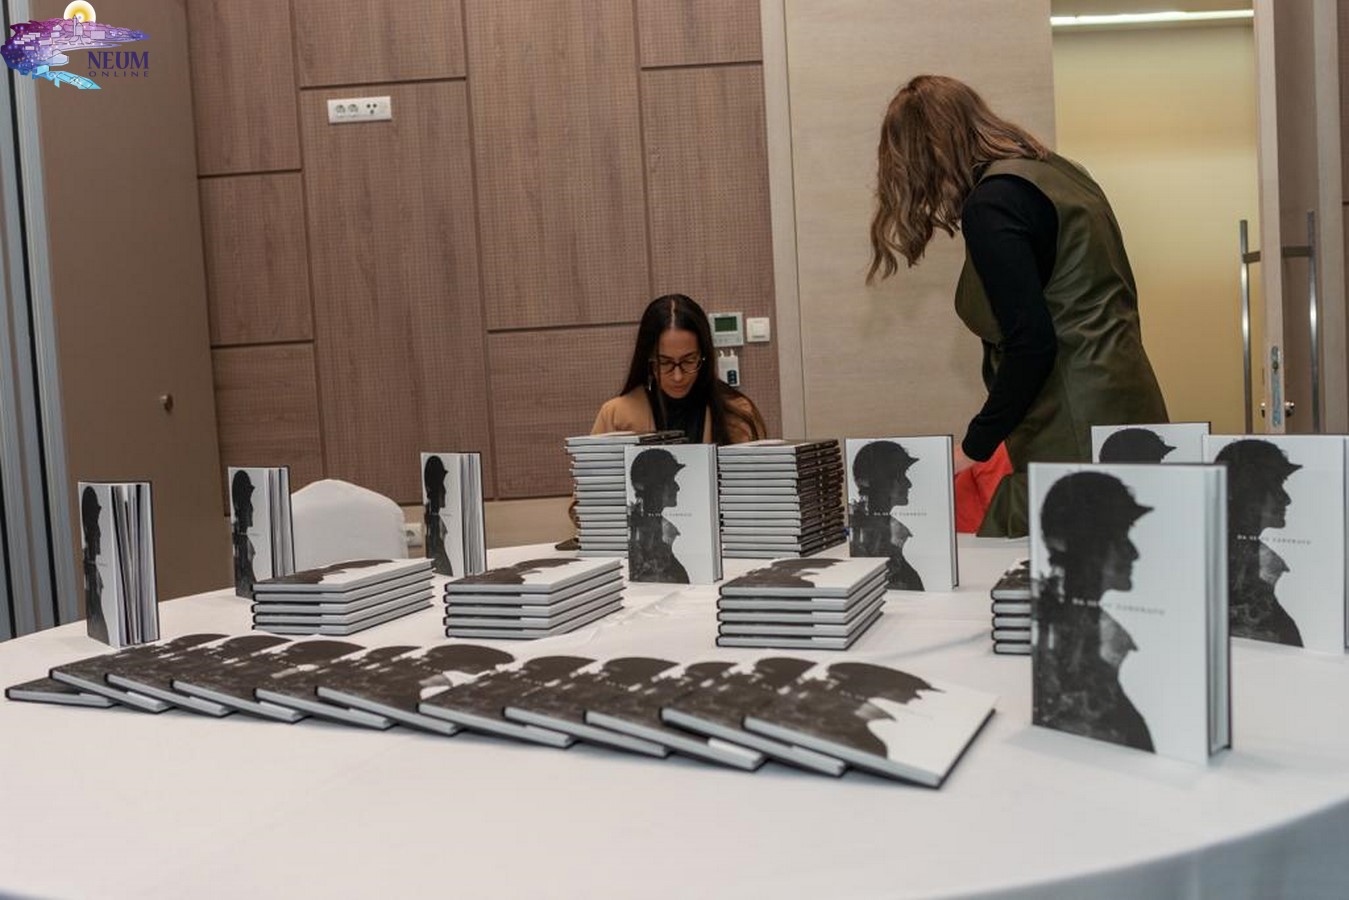 FOTO | U prepunoj dvorani u Neumu održana promocija knjige “Da se ne zaborave” mlade autorice Maje Raguž